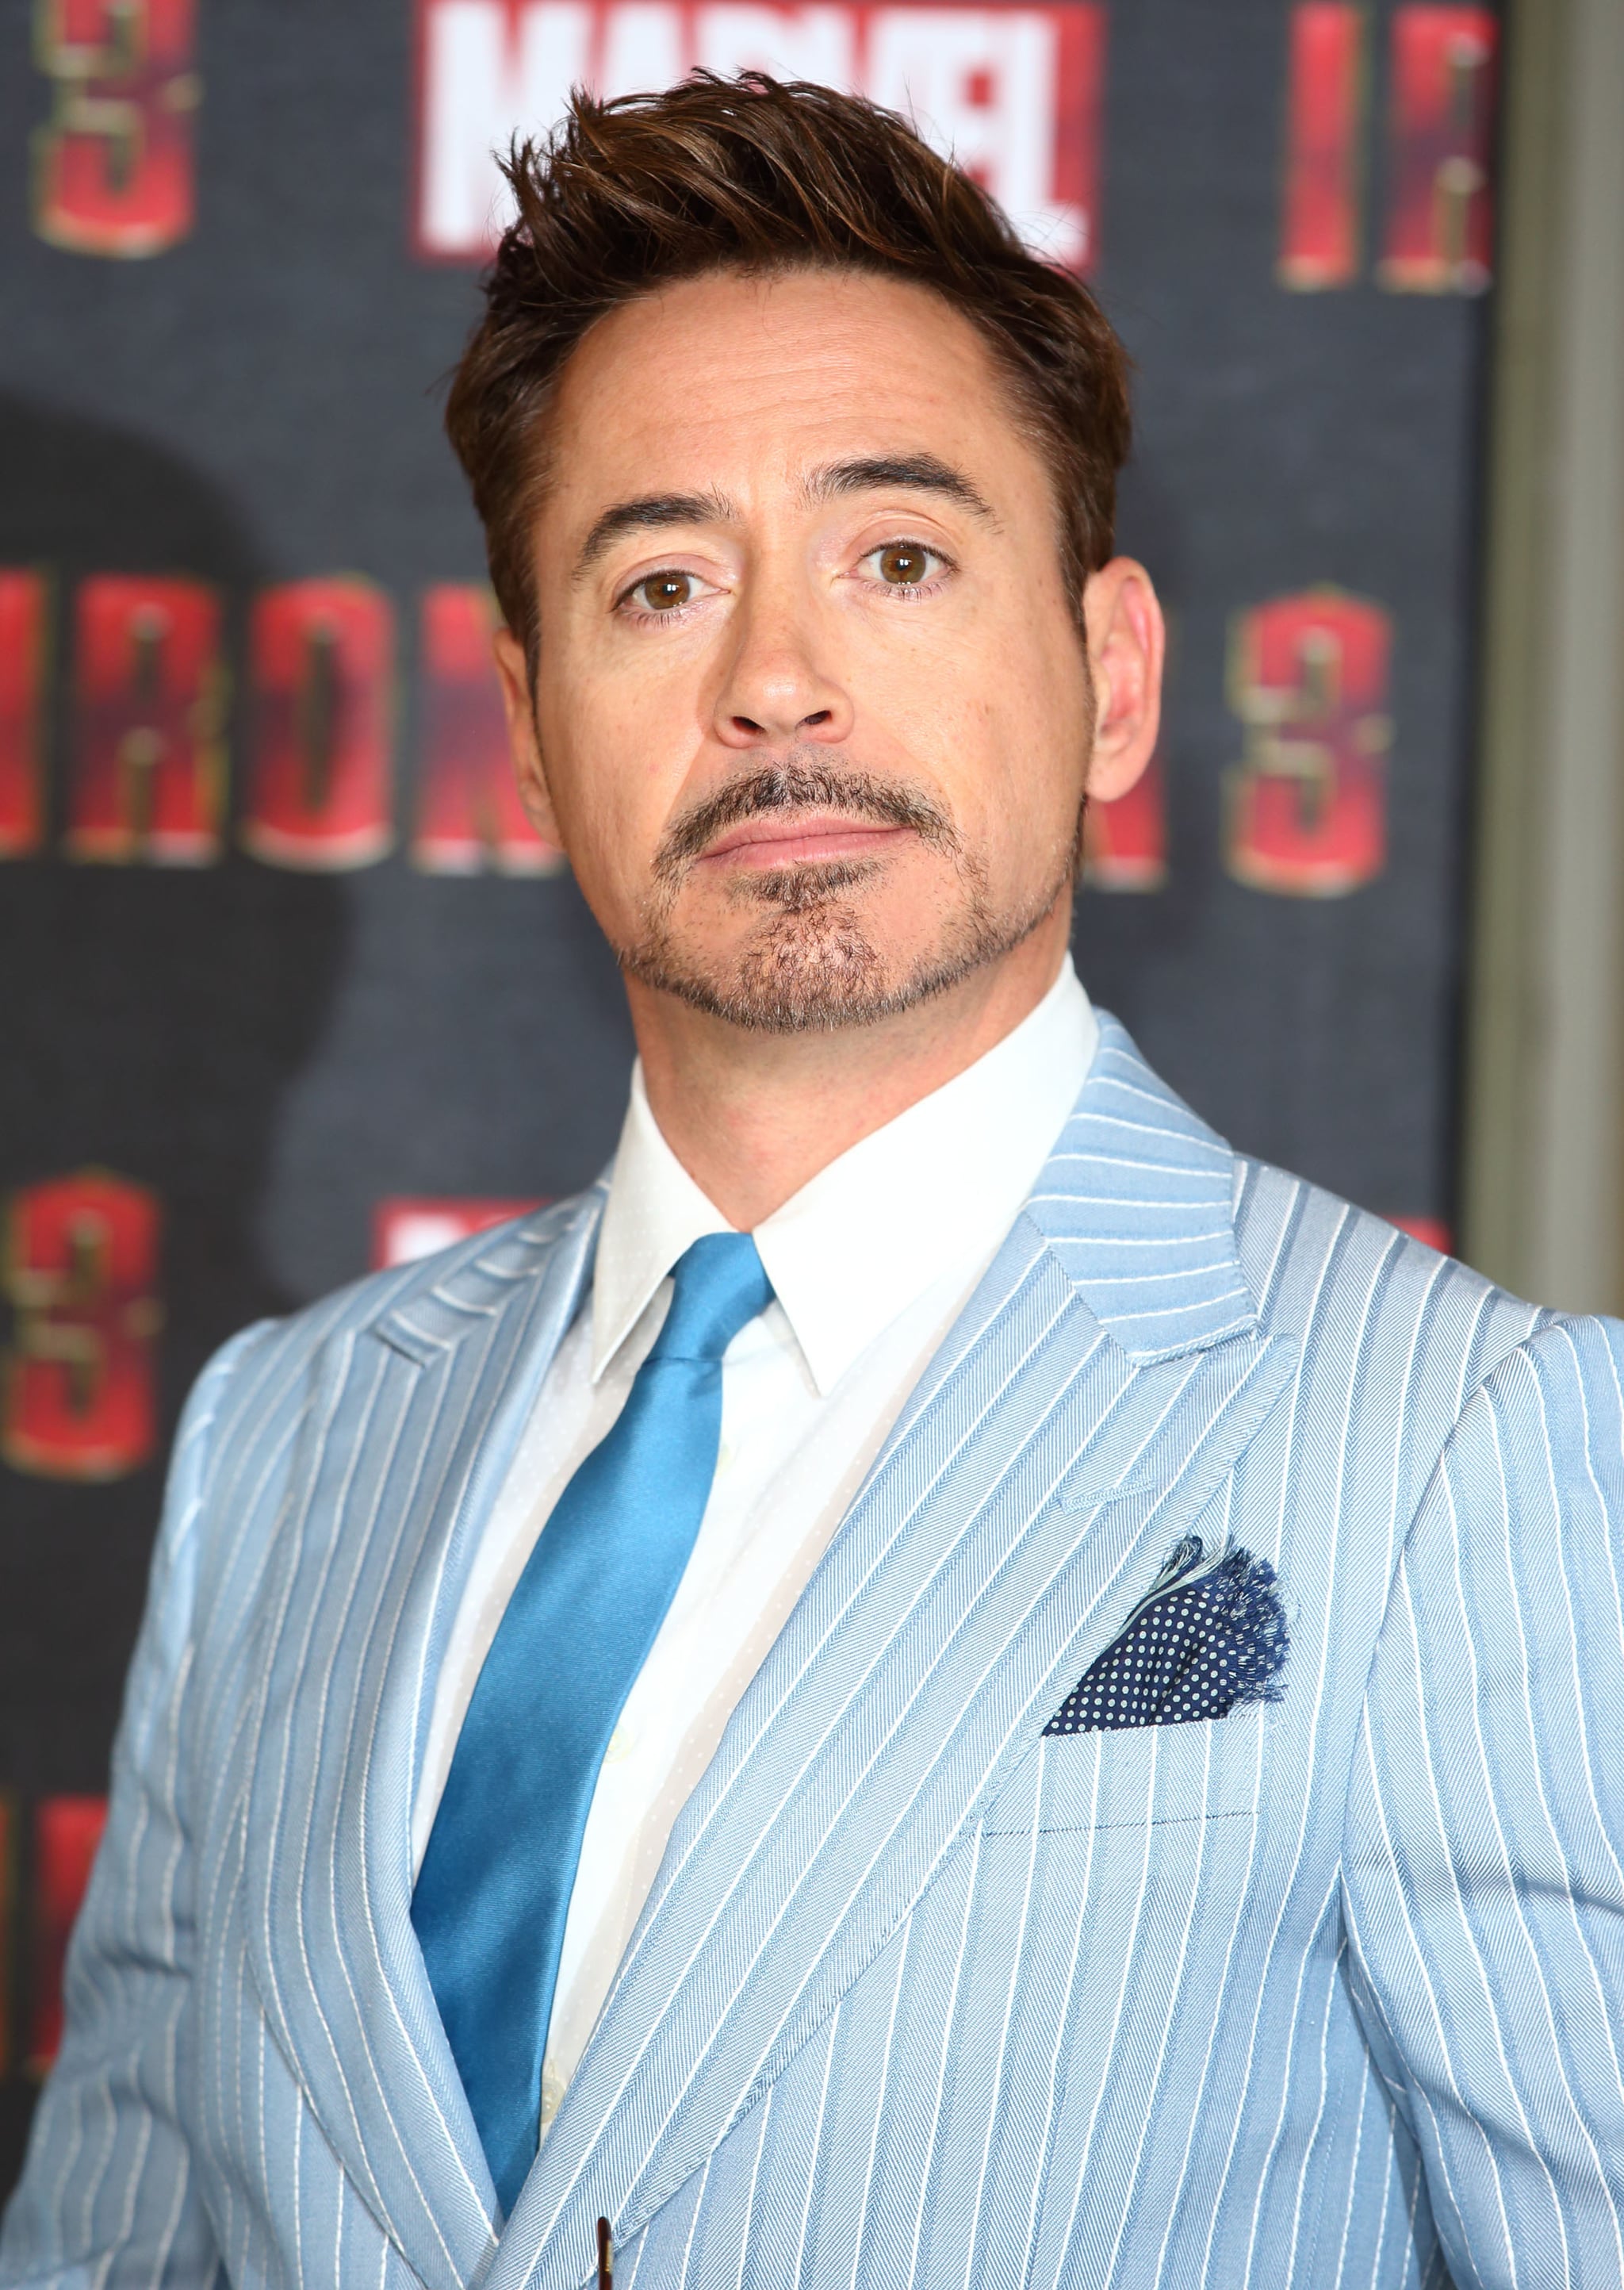 Robert Downey Jr hints at Iron Man future